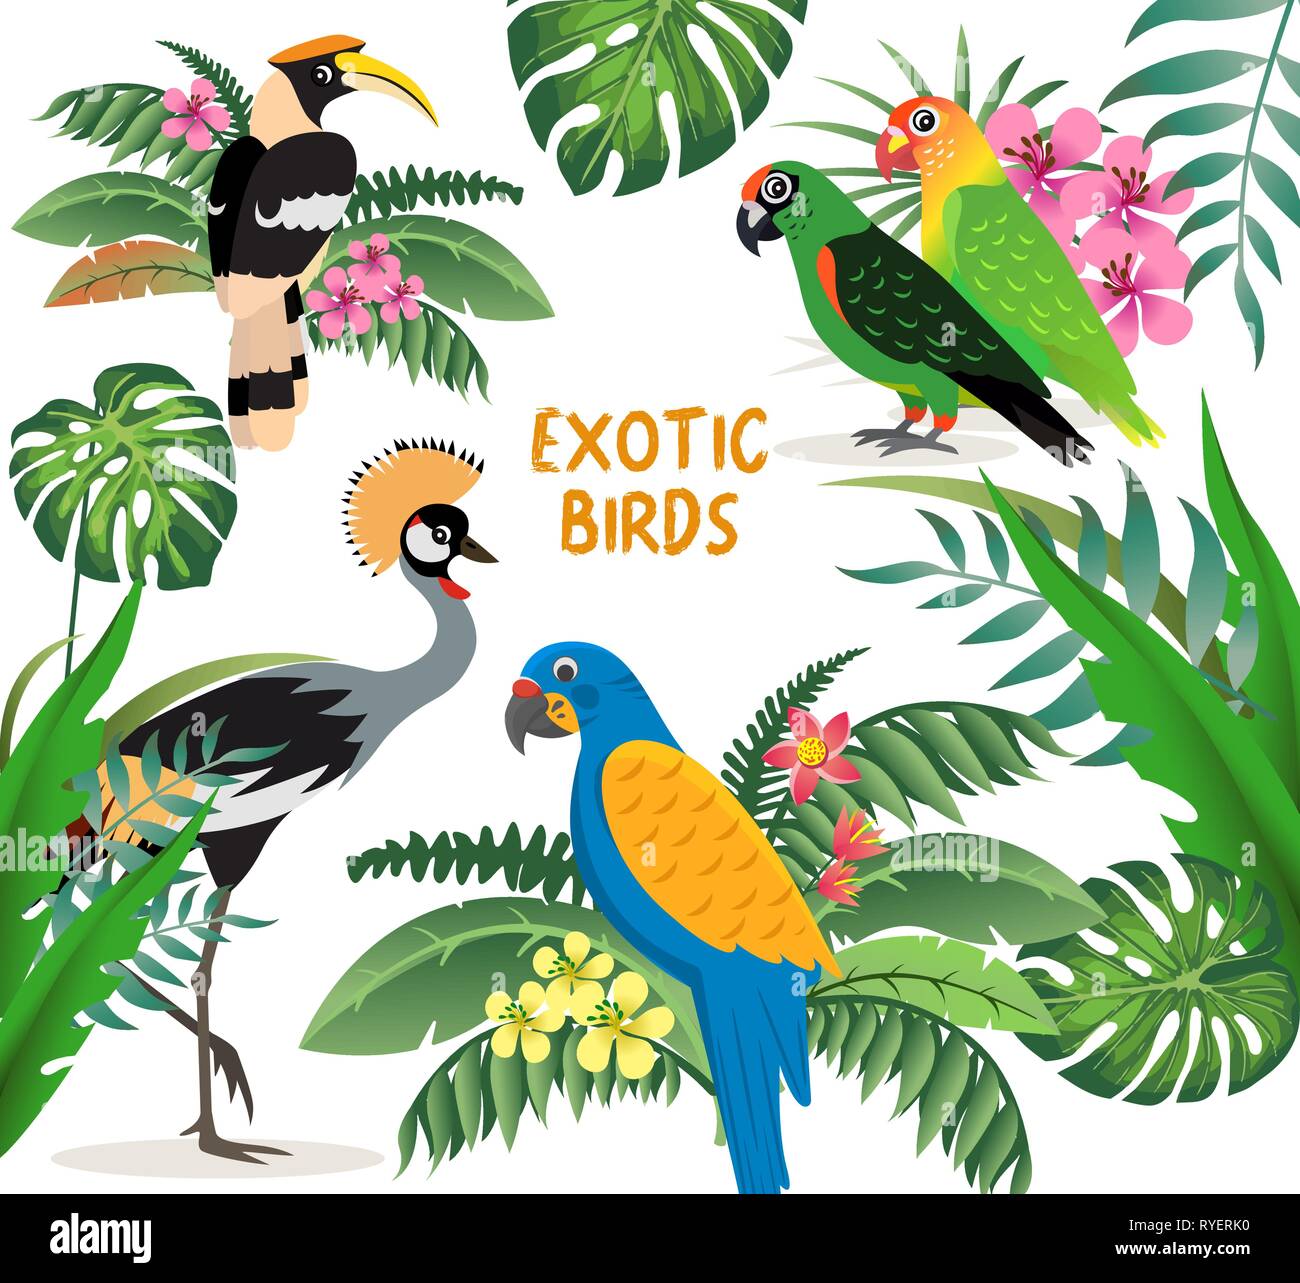 Exotische Vögel, gekrönt Kran, bunte Papageien lovebirds und Blau mit gelben Flügeln macaw, freundlich, tolle Hornbill, Blätter und Blüten, Vektor Stock Vektor